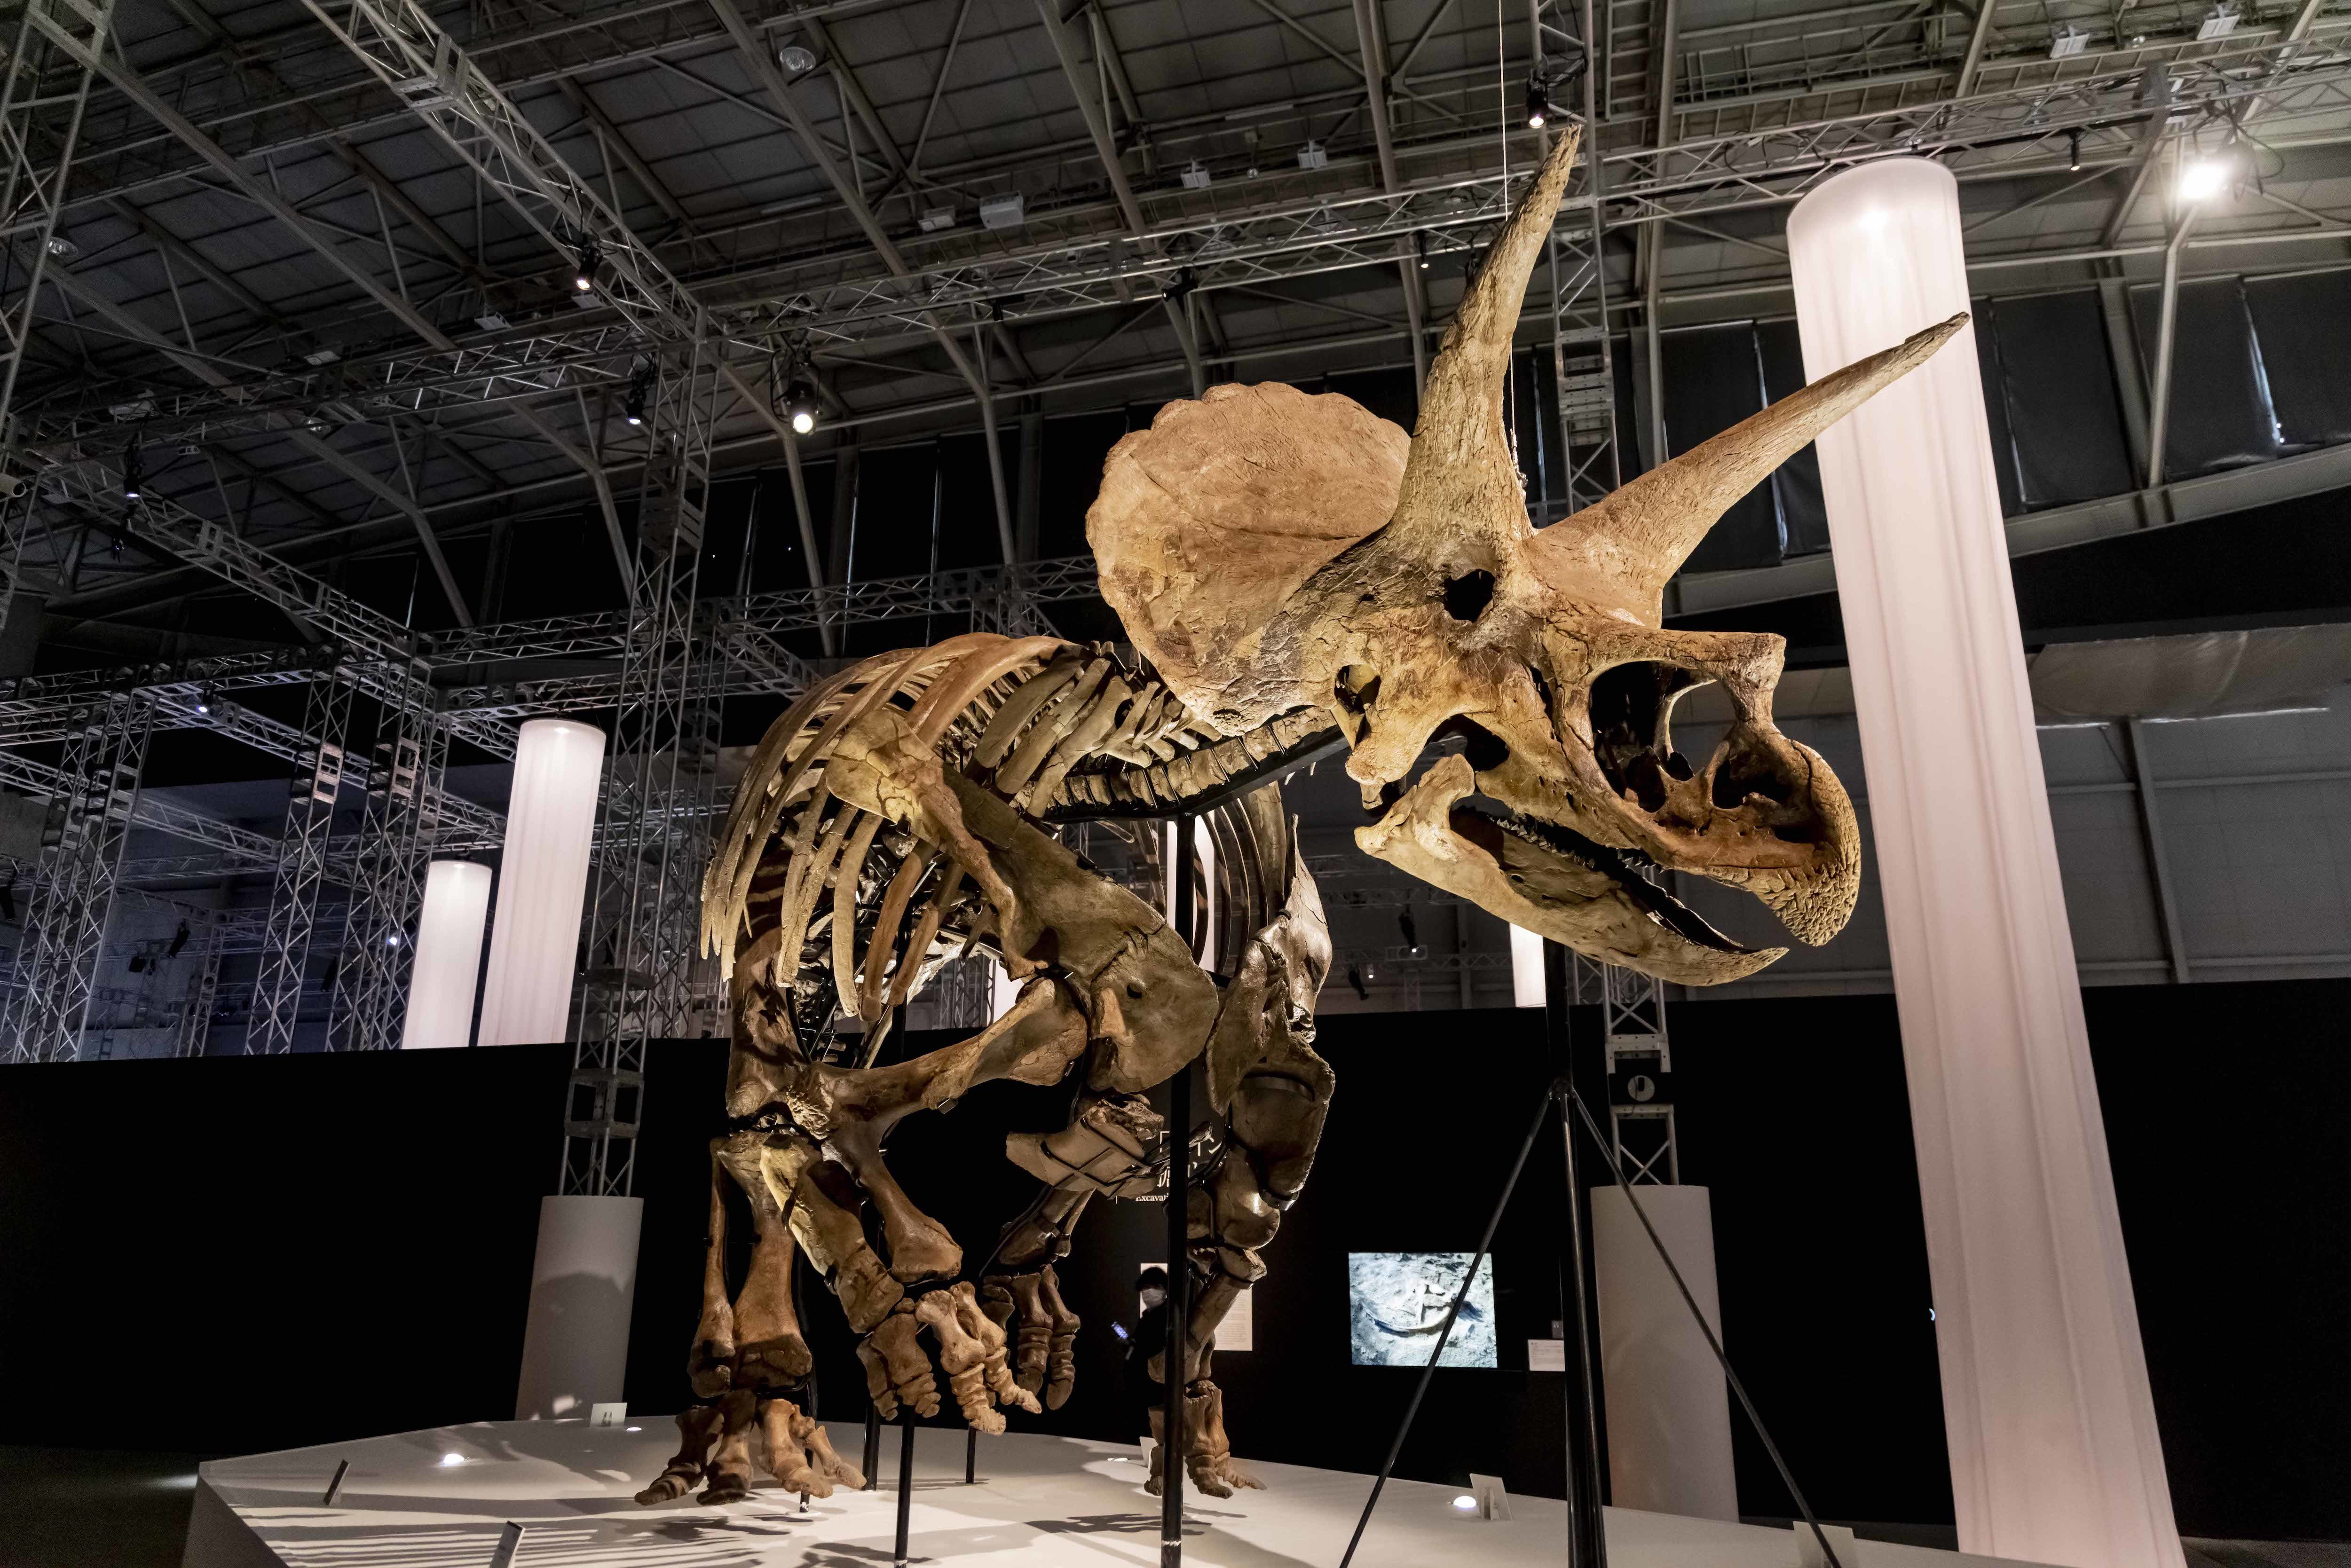 トリケラトプス「レイン」 ※ヒューストン自然科学博物館所蔵